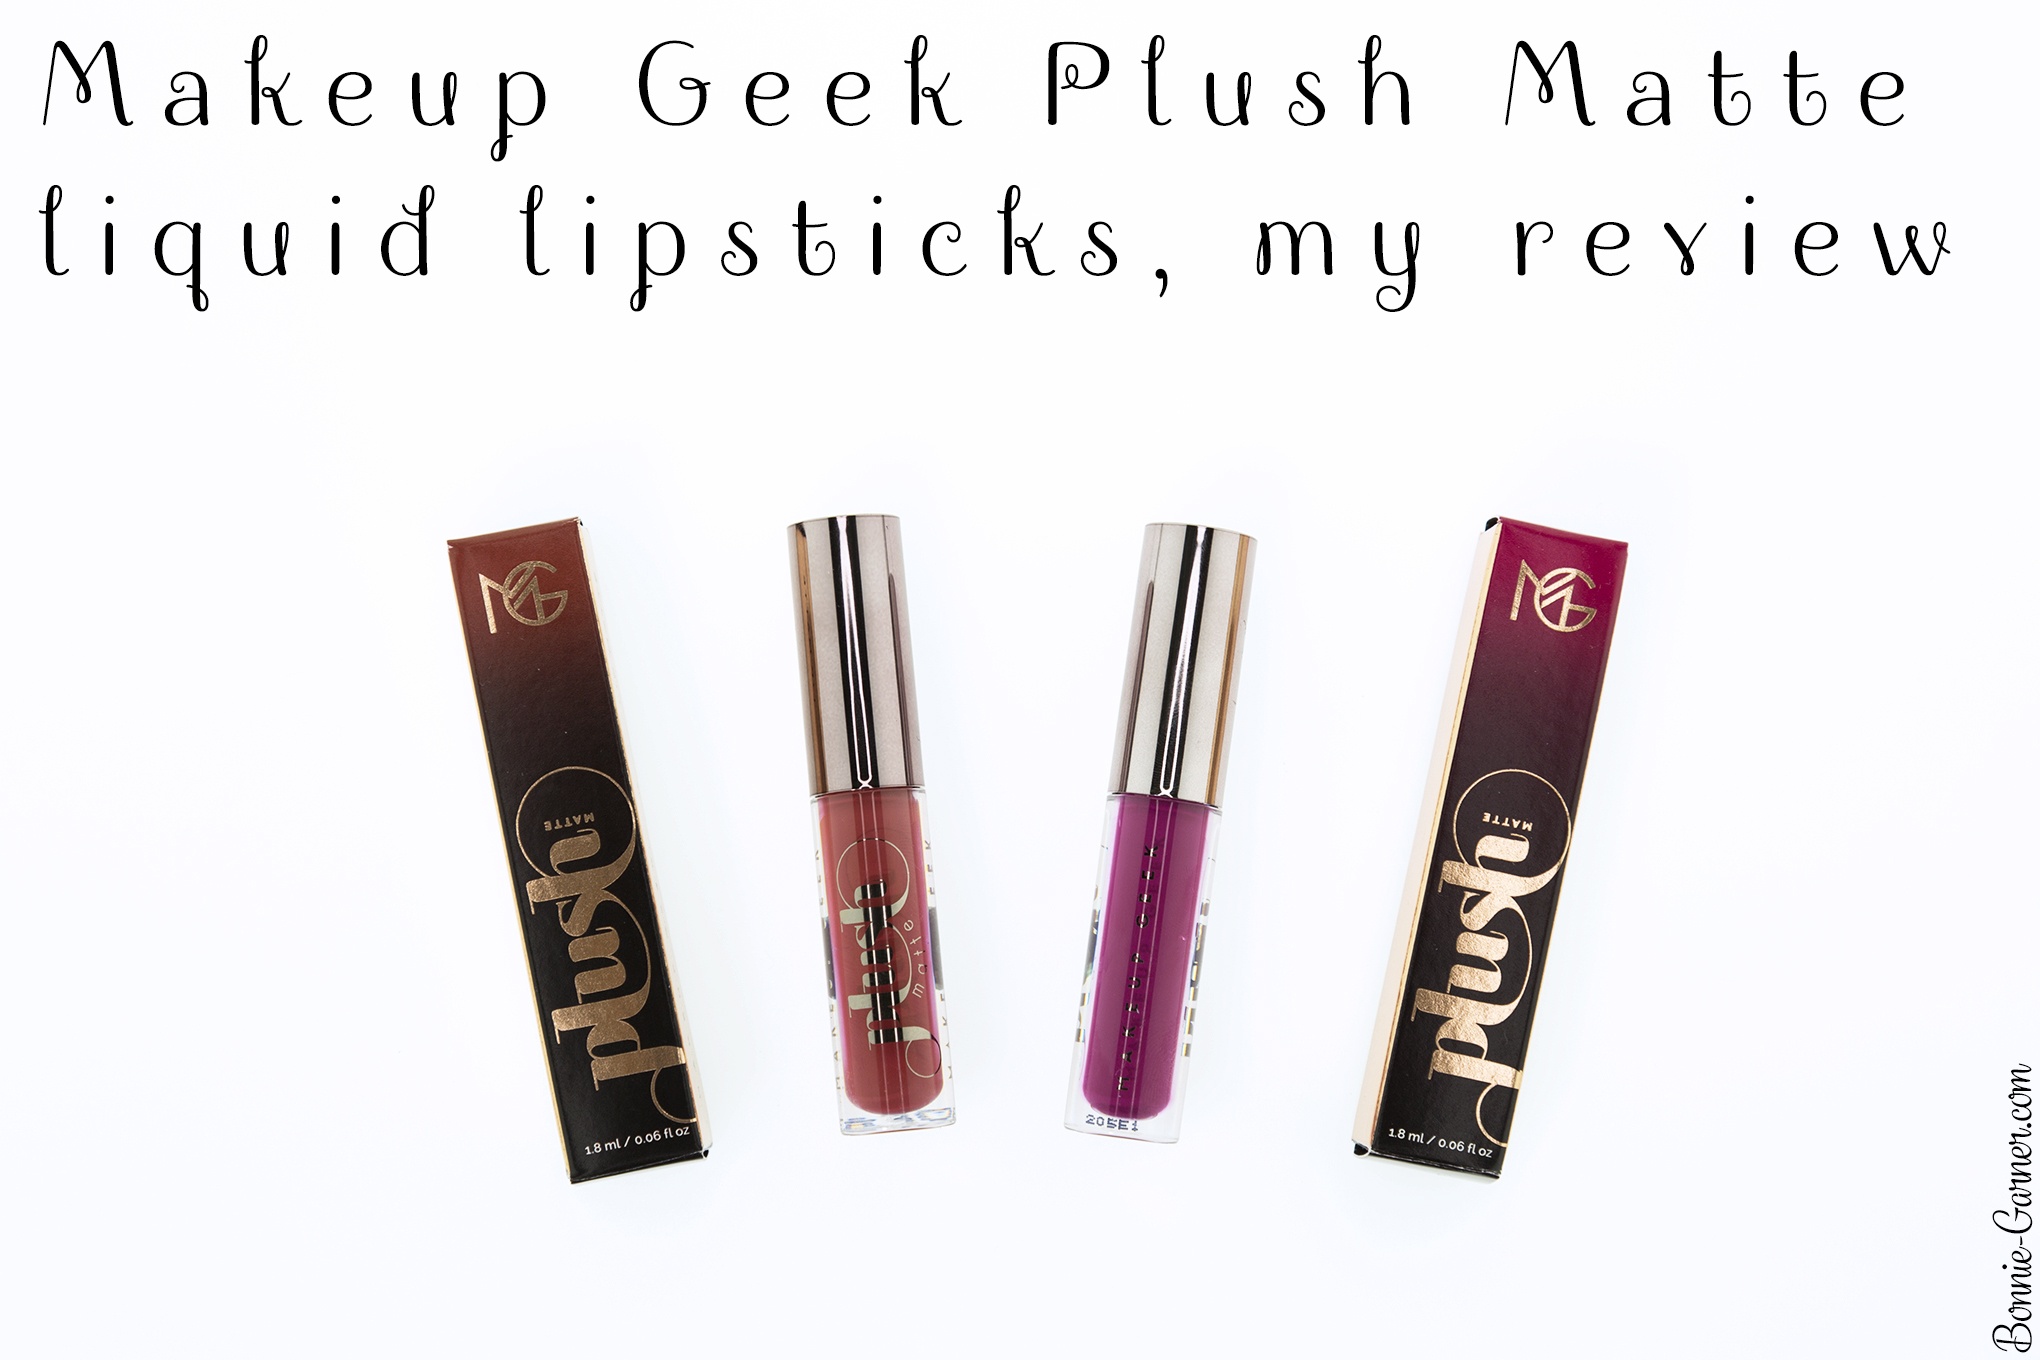 Makeup Geek Plush Matte liquid lipsticks, my review